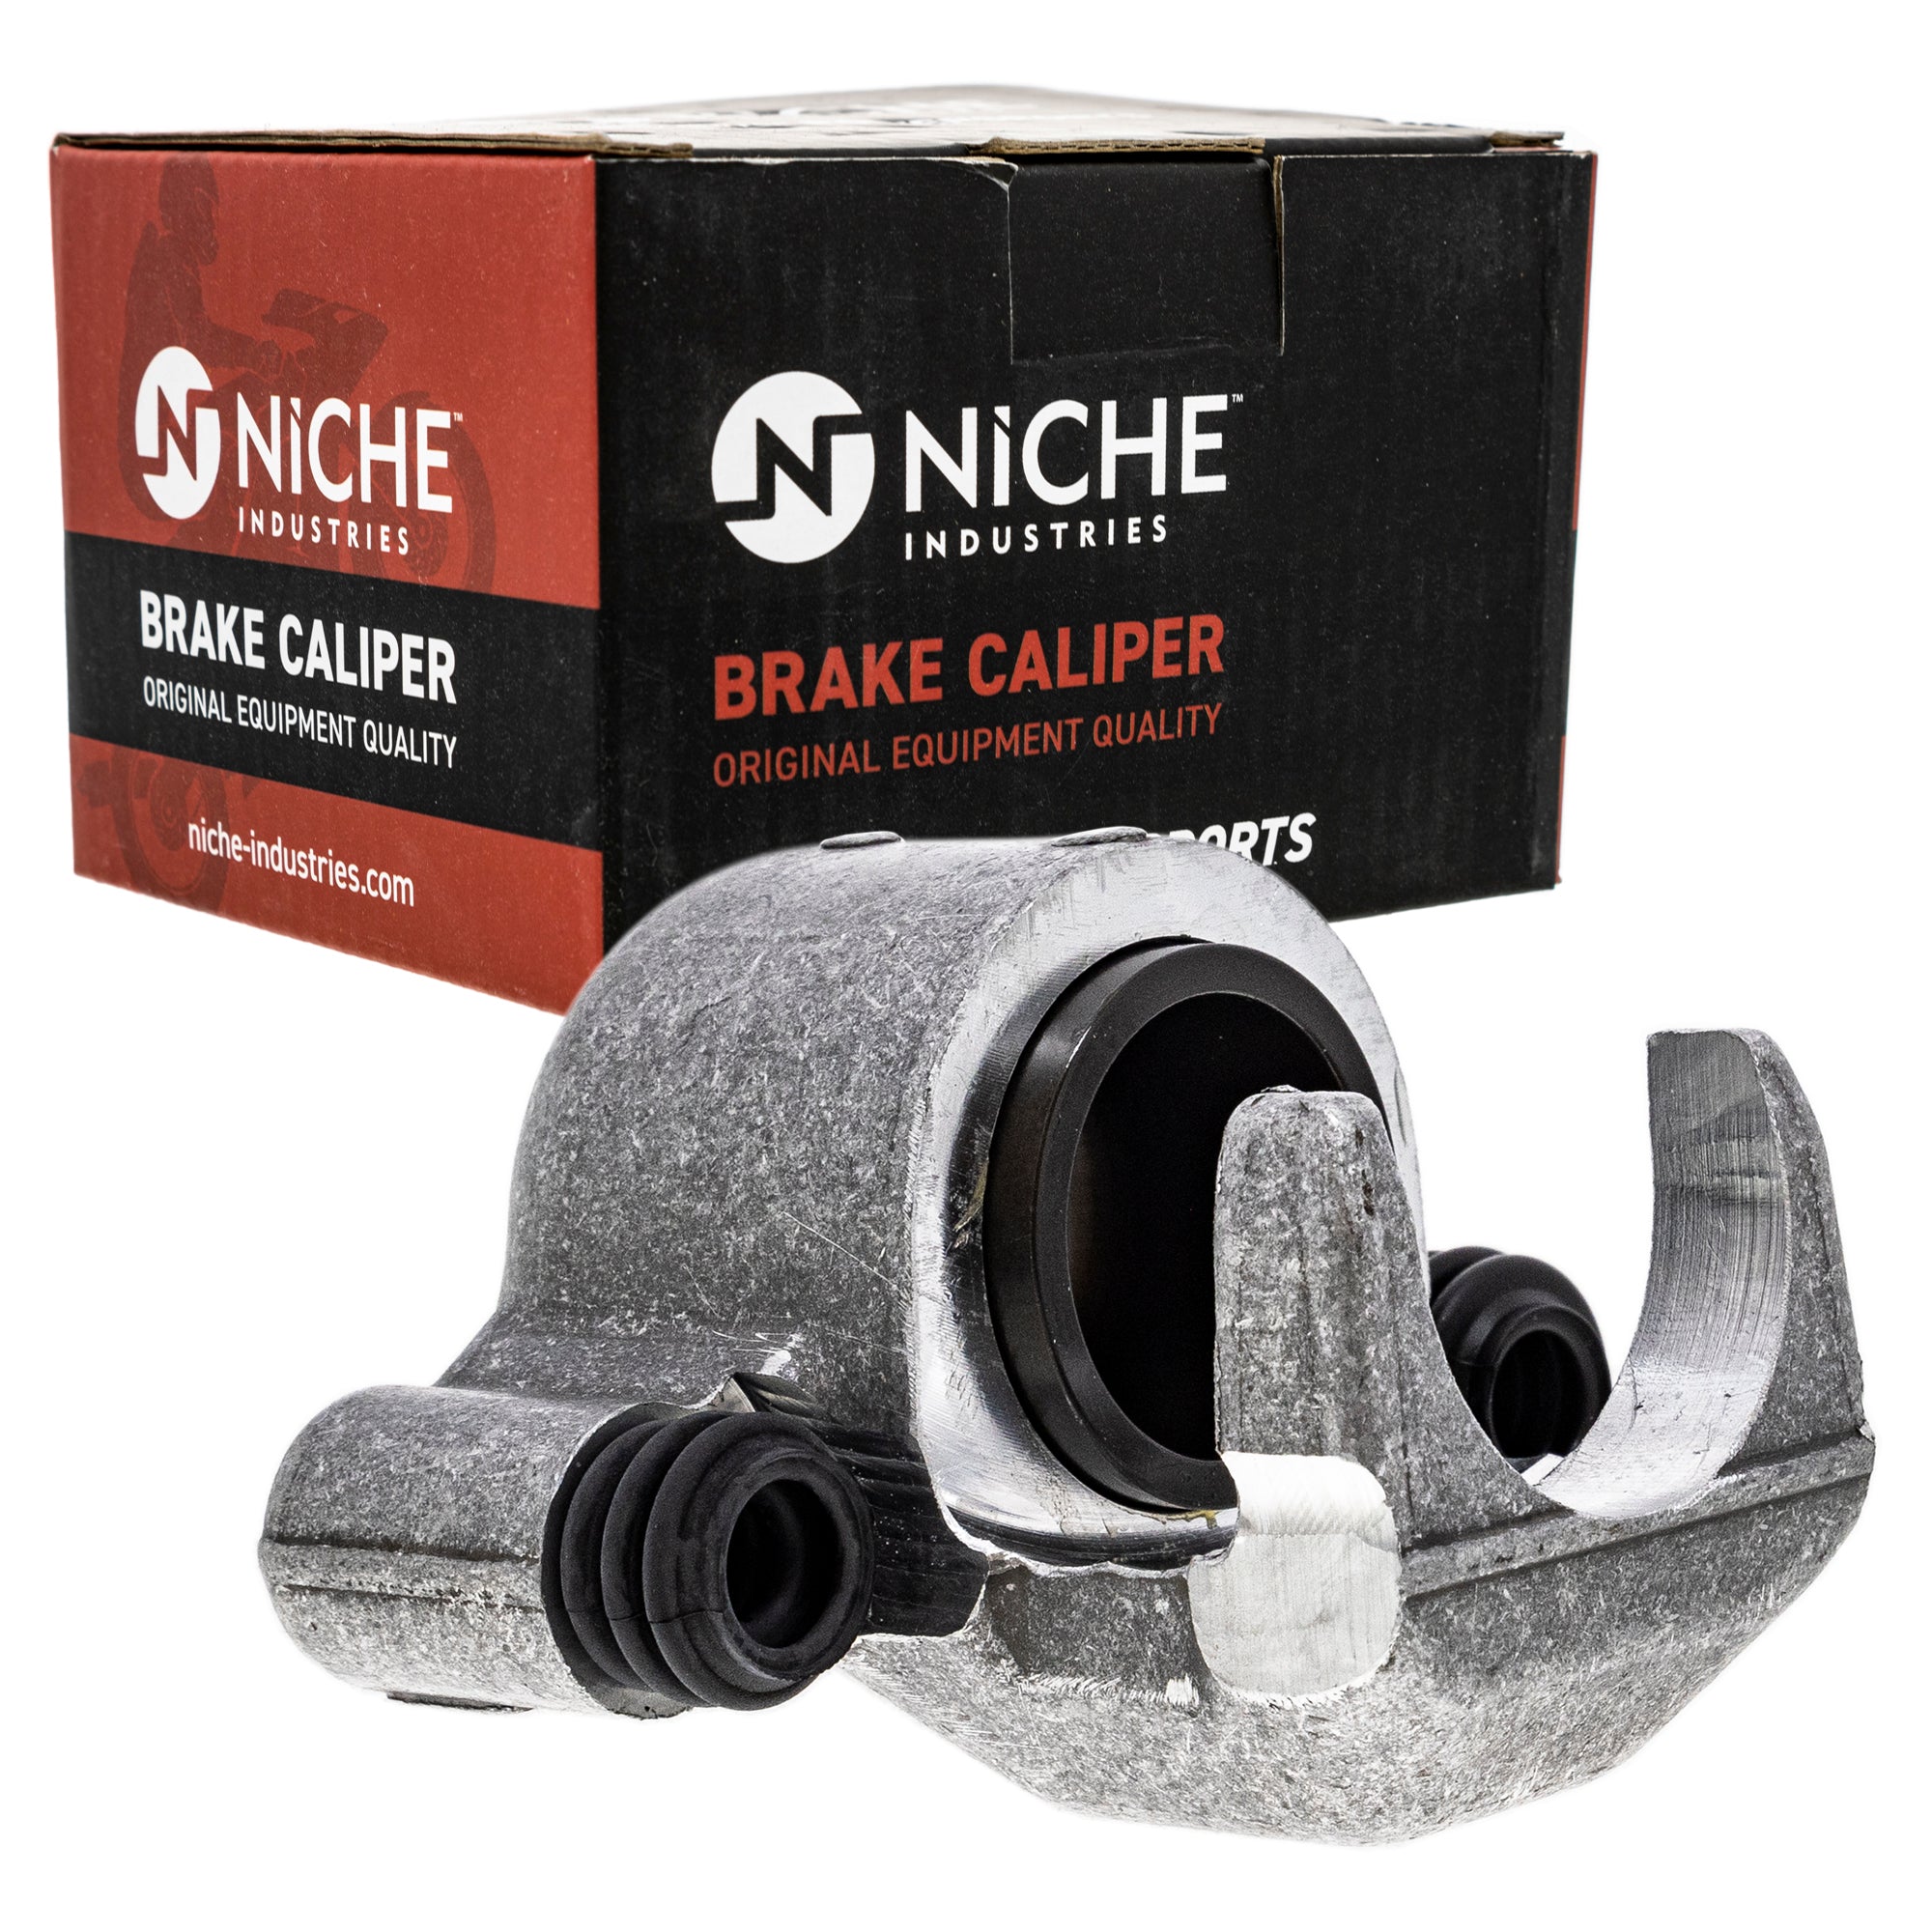 NICHE MK1001013 Brake Caliper Kit